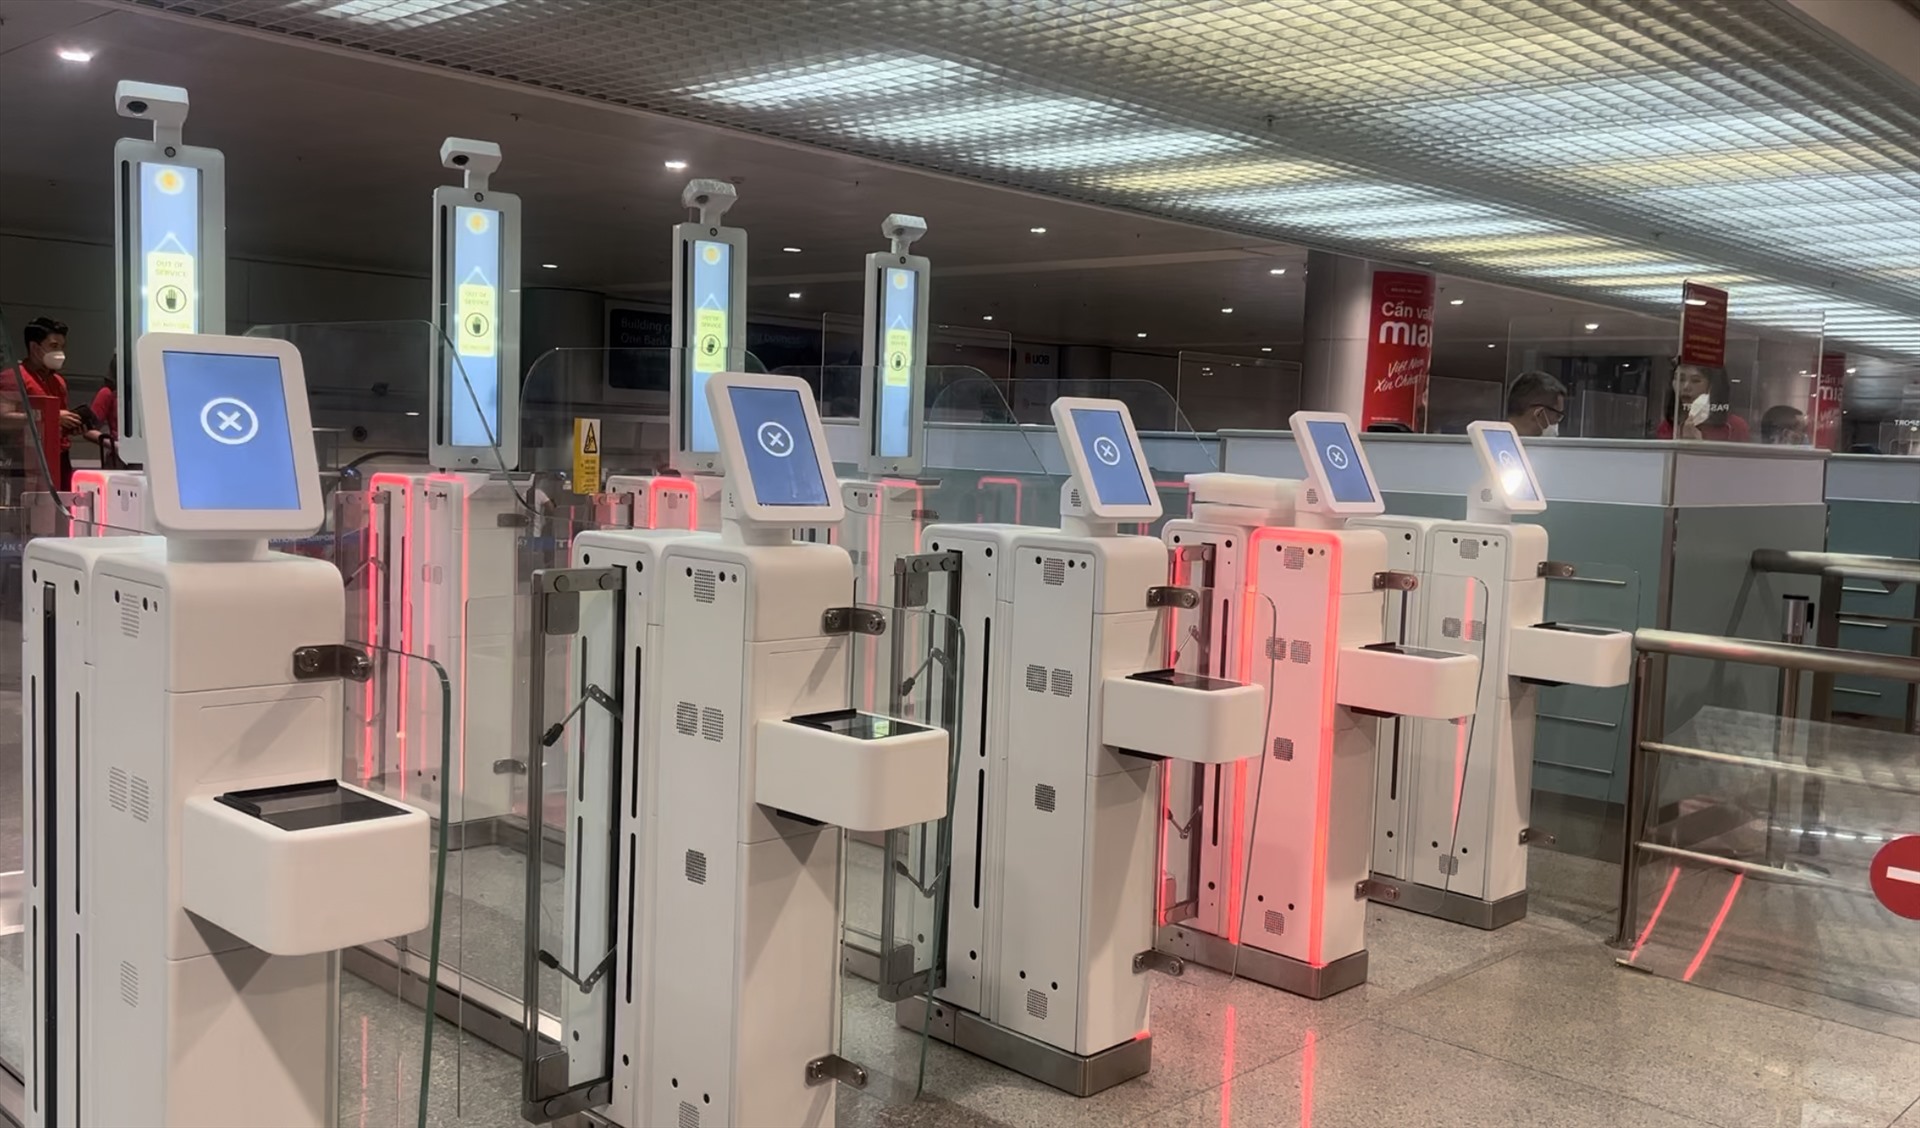 Hệ thống máy móc đã được trang bị tại ga quốc tế sân bay Tân Sơn Nhất từ vài tháng trước. Ảnh: Khánh Linh